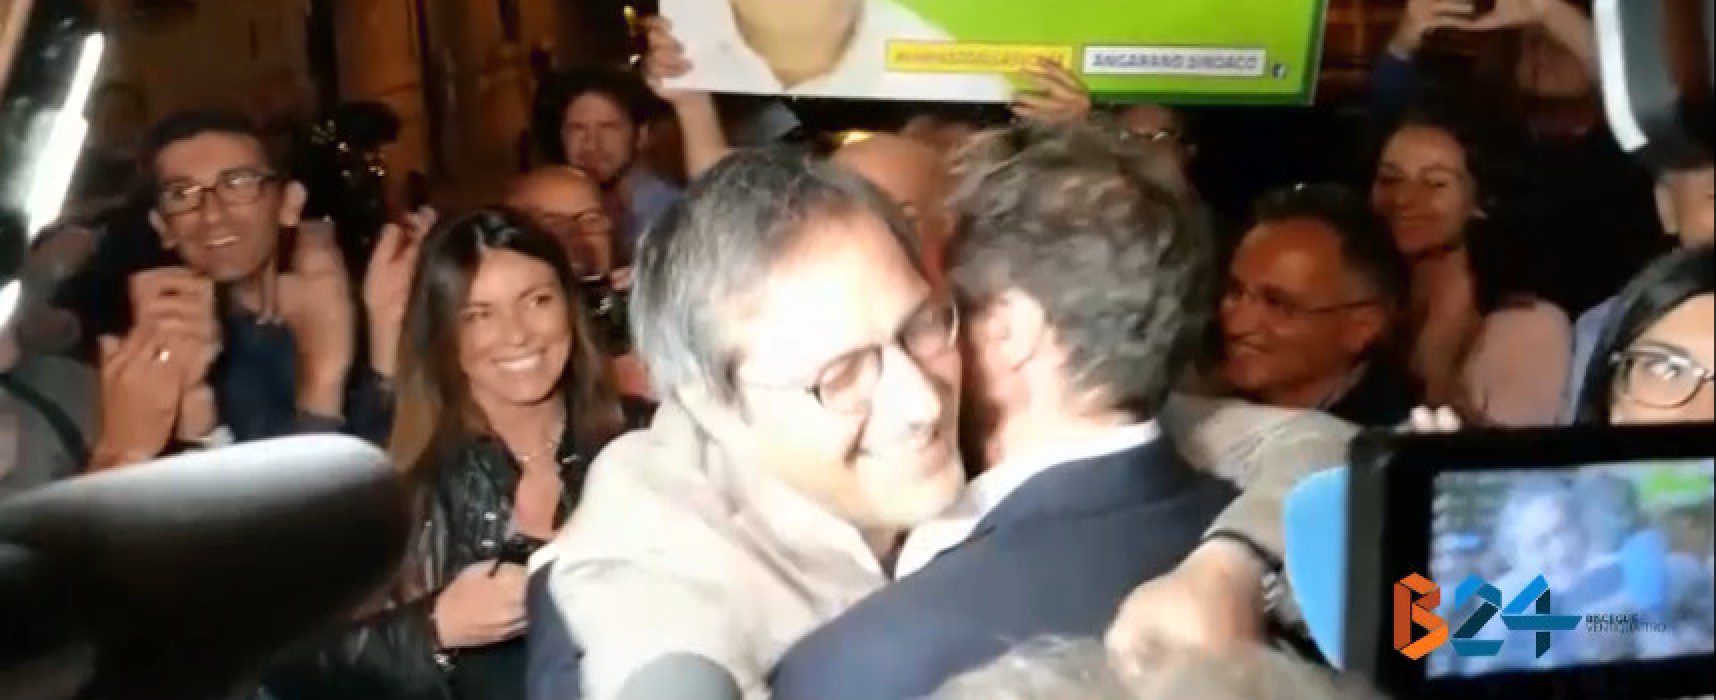 L’abbraccio fra Casella ed Angarano e le dichiarazioni a caldo dei due / VIDEO